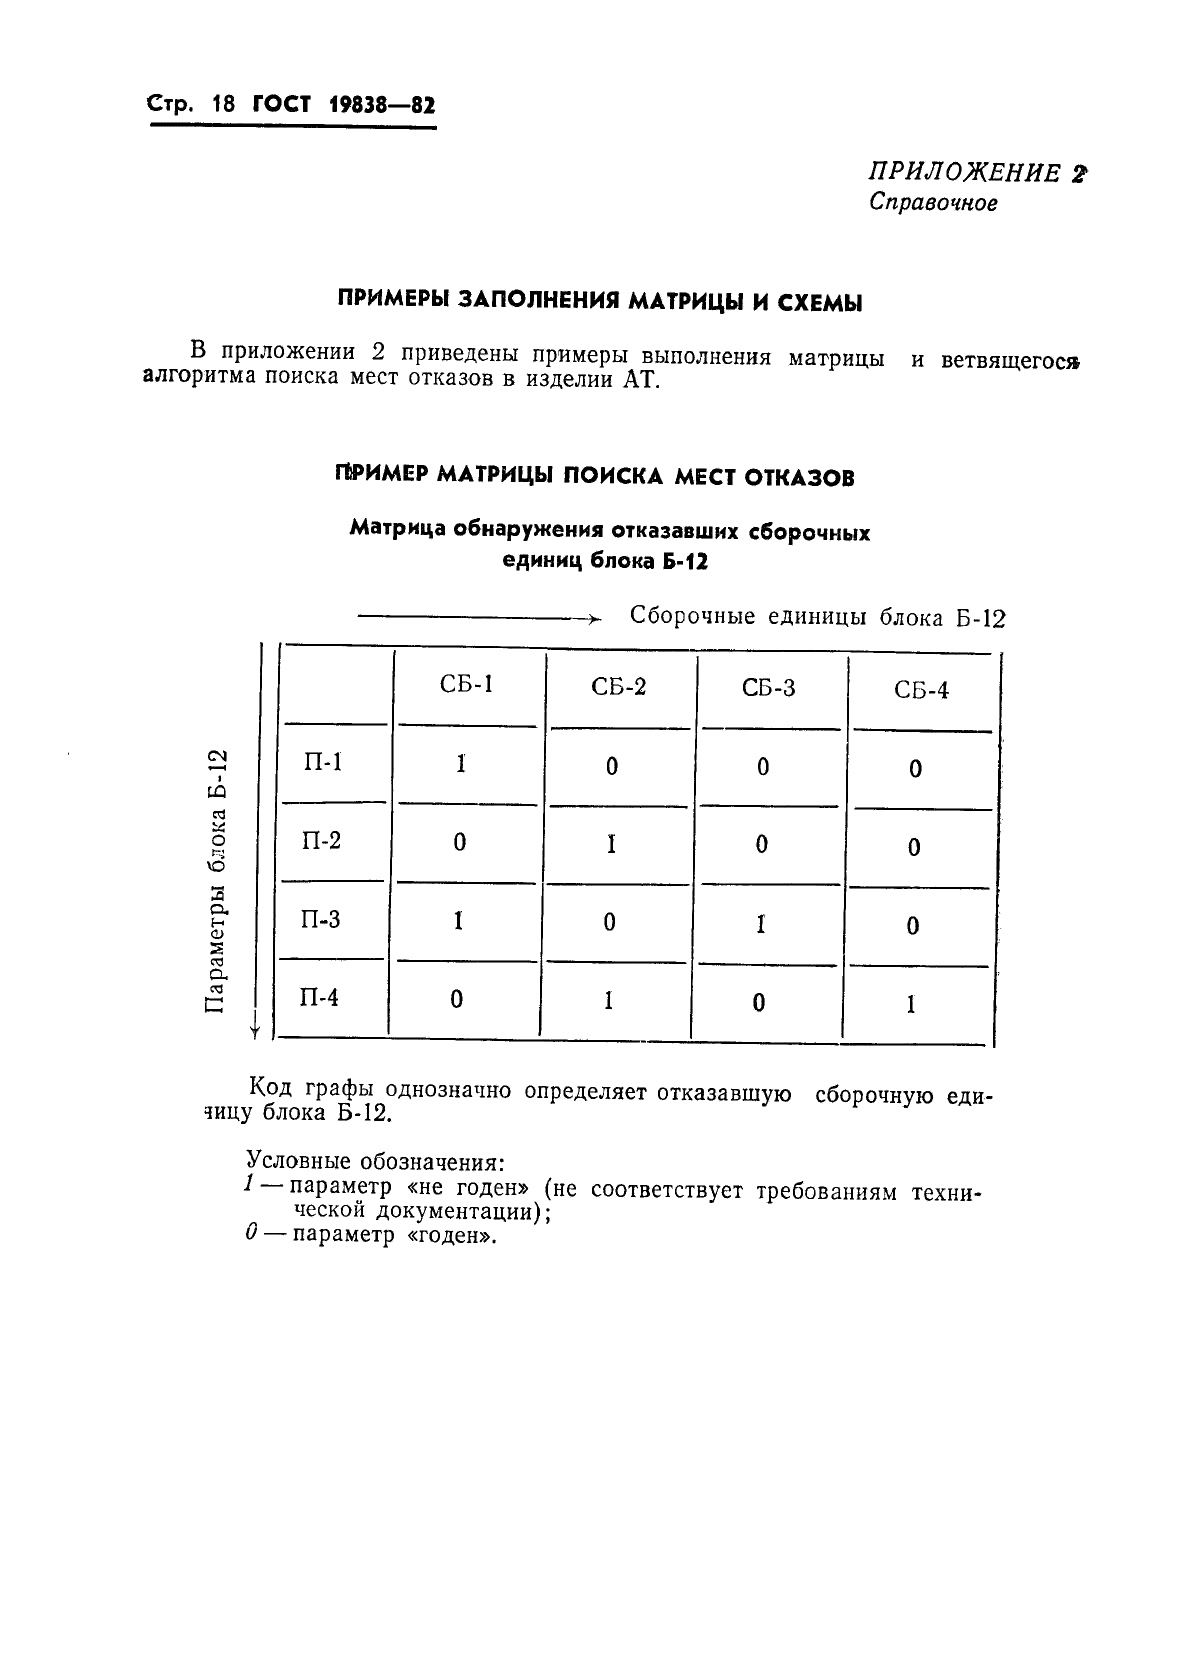 ГОСТ 19838-82 Характеристика контролепригодности изделий авиационной техники. Правила изложения и оформления (фото 19 из 21)